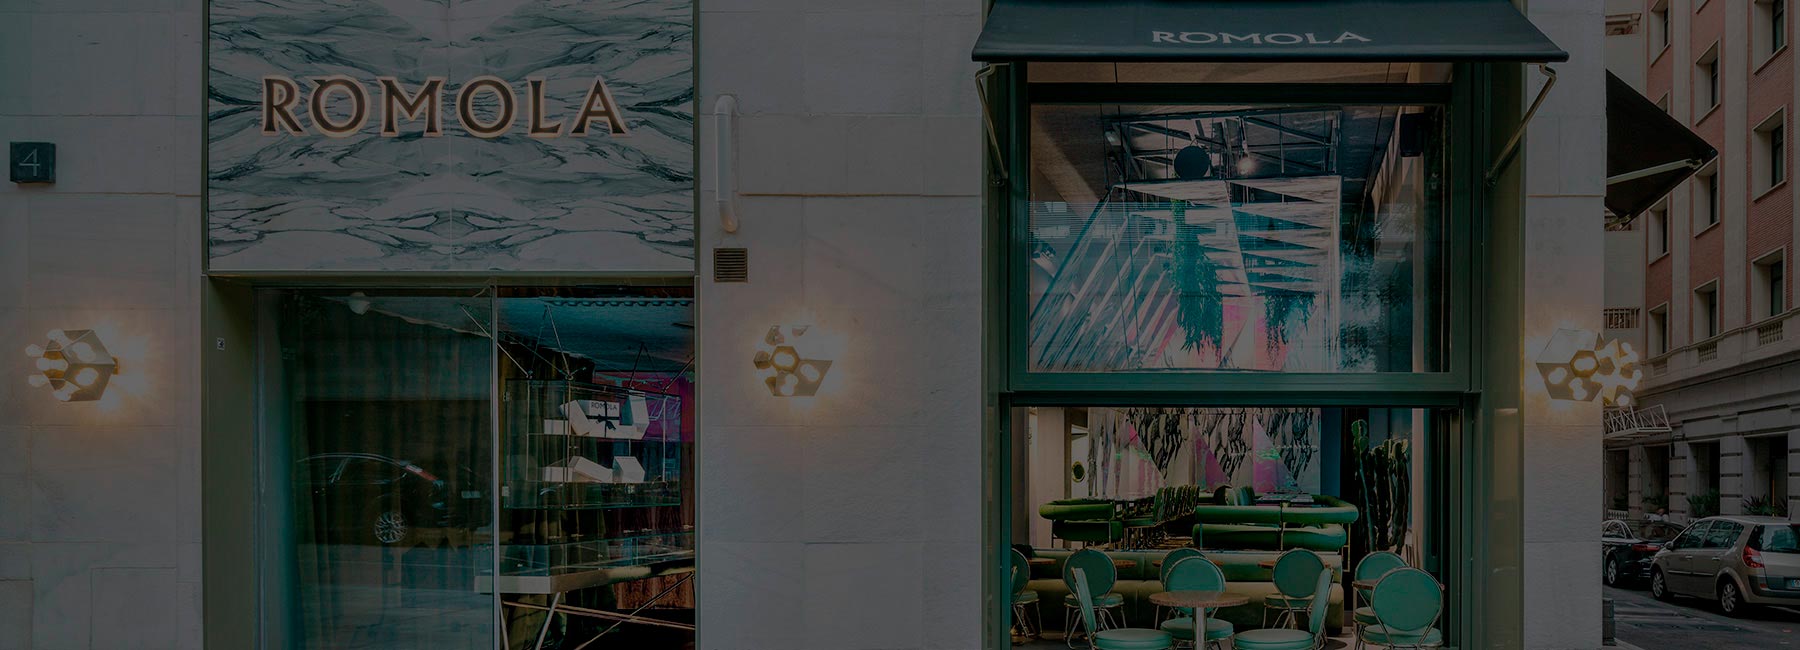 Испанский архитектор Андре Жак завершил работу над мраморным рестораном “Romola”